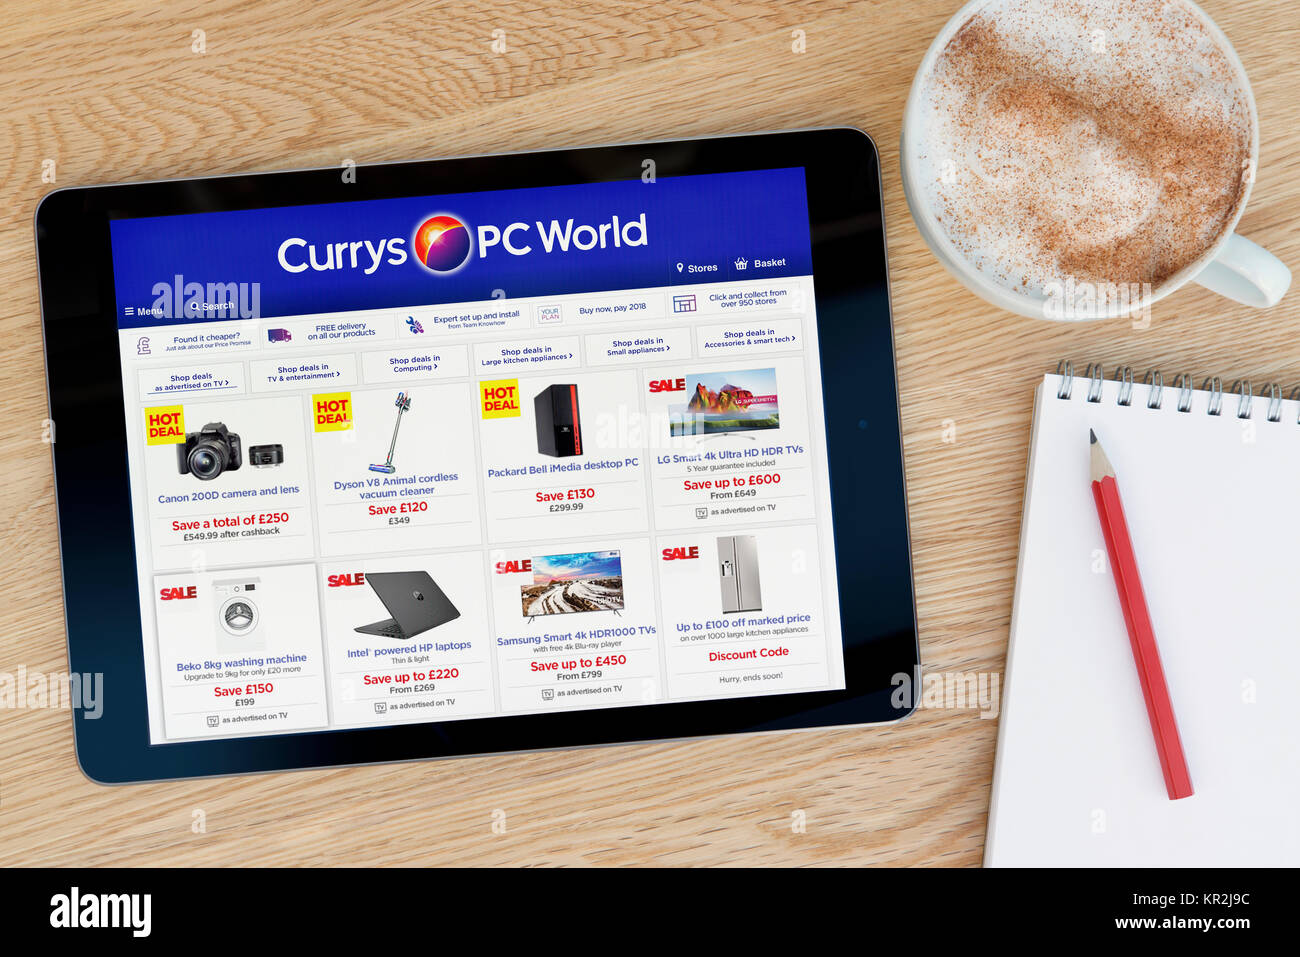 El sitio web de PC World, Currys en un dispositivo tablet iPad que descansa sobre una mesa de madera junto a un bloc de notas y lápiz y una taza de café (Editorial) Foto de stock